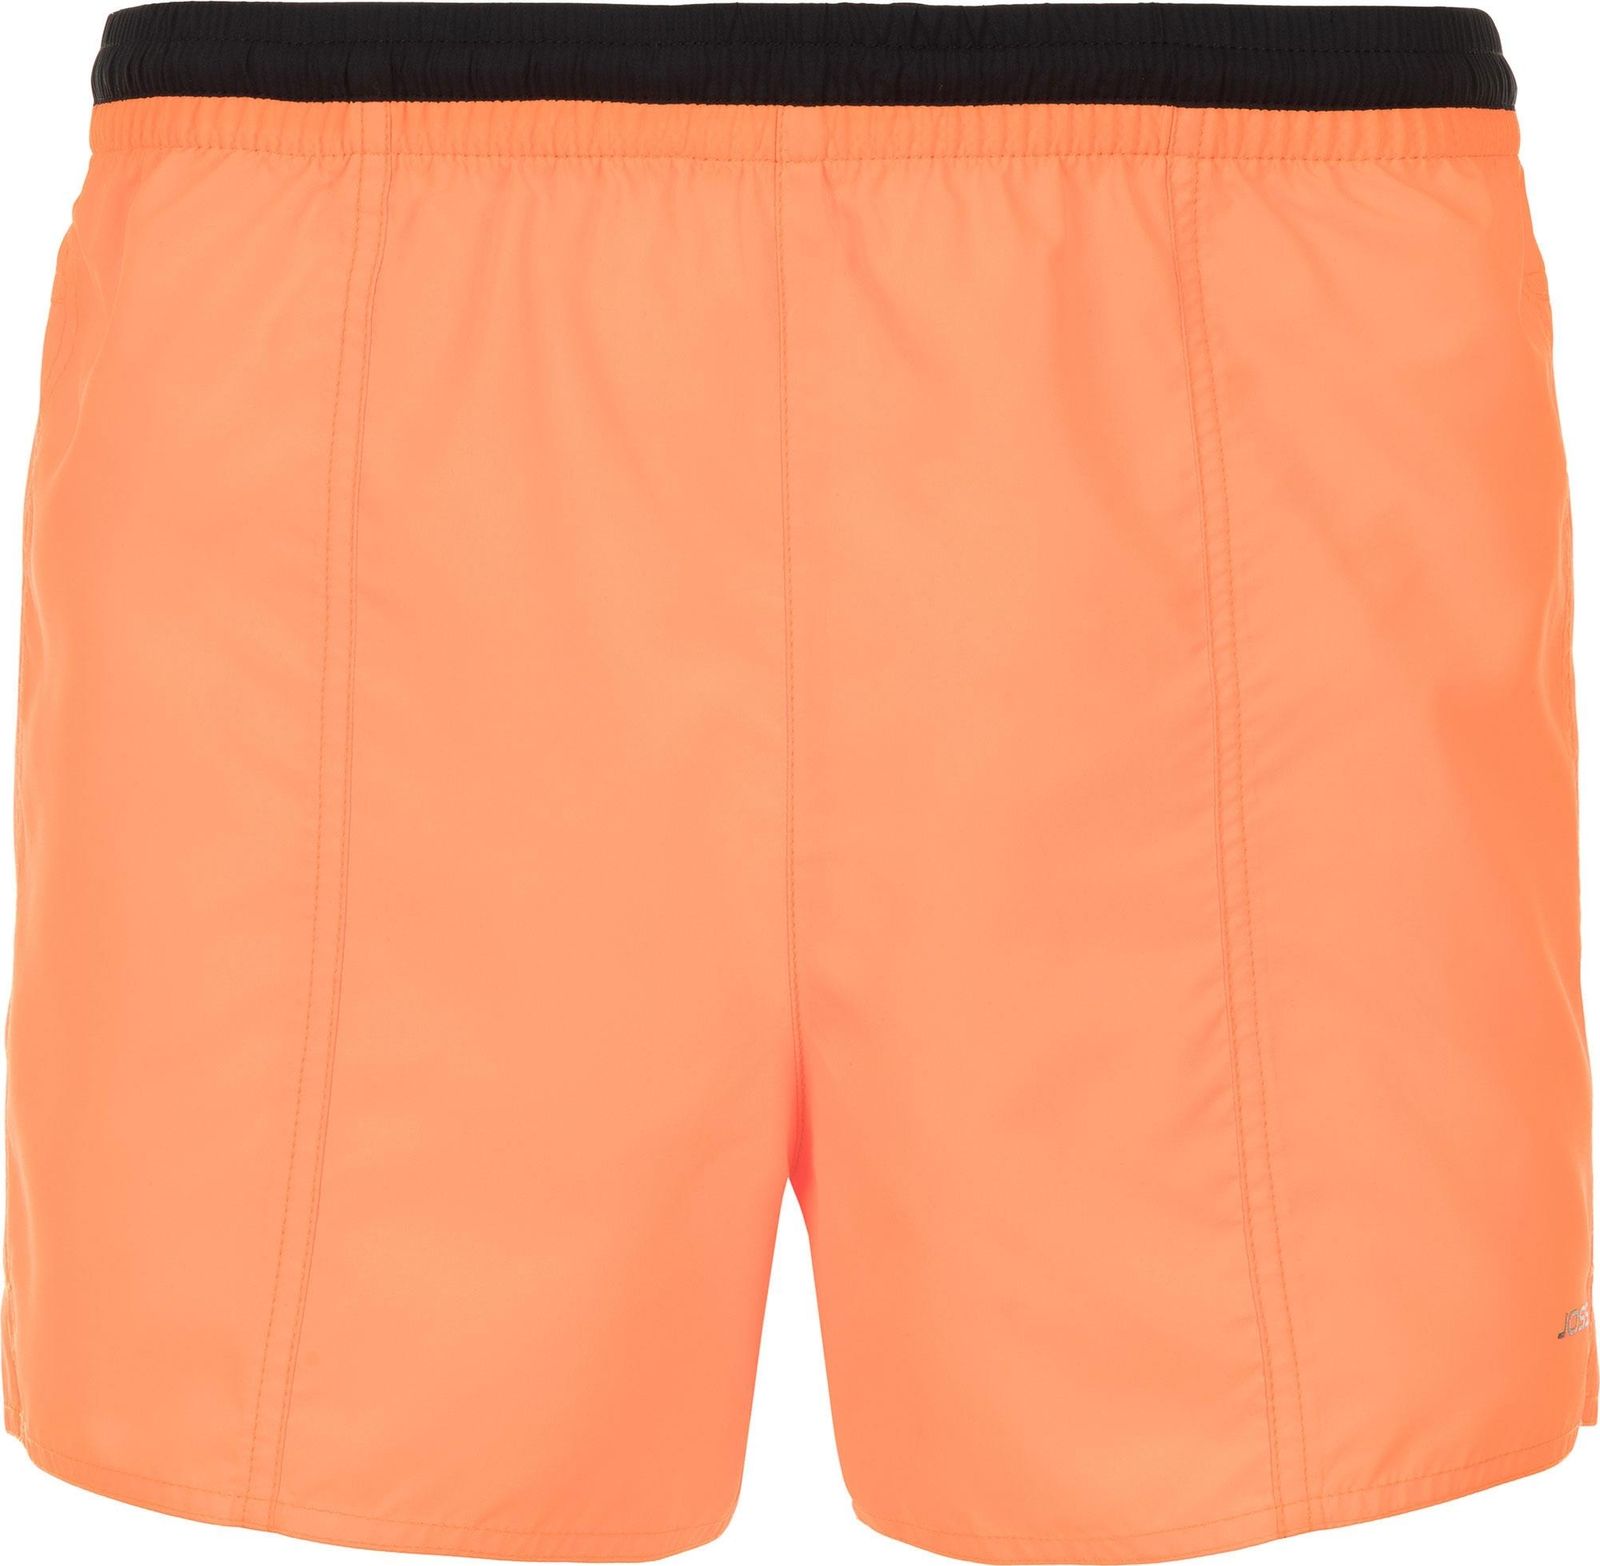     Joss Men's shorts, : . MSW40S6-D2.  50